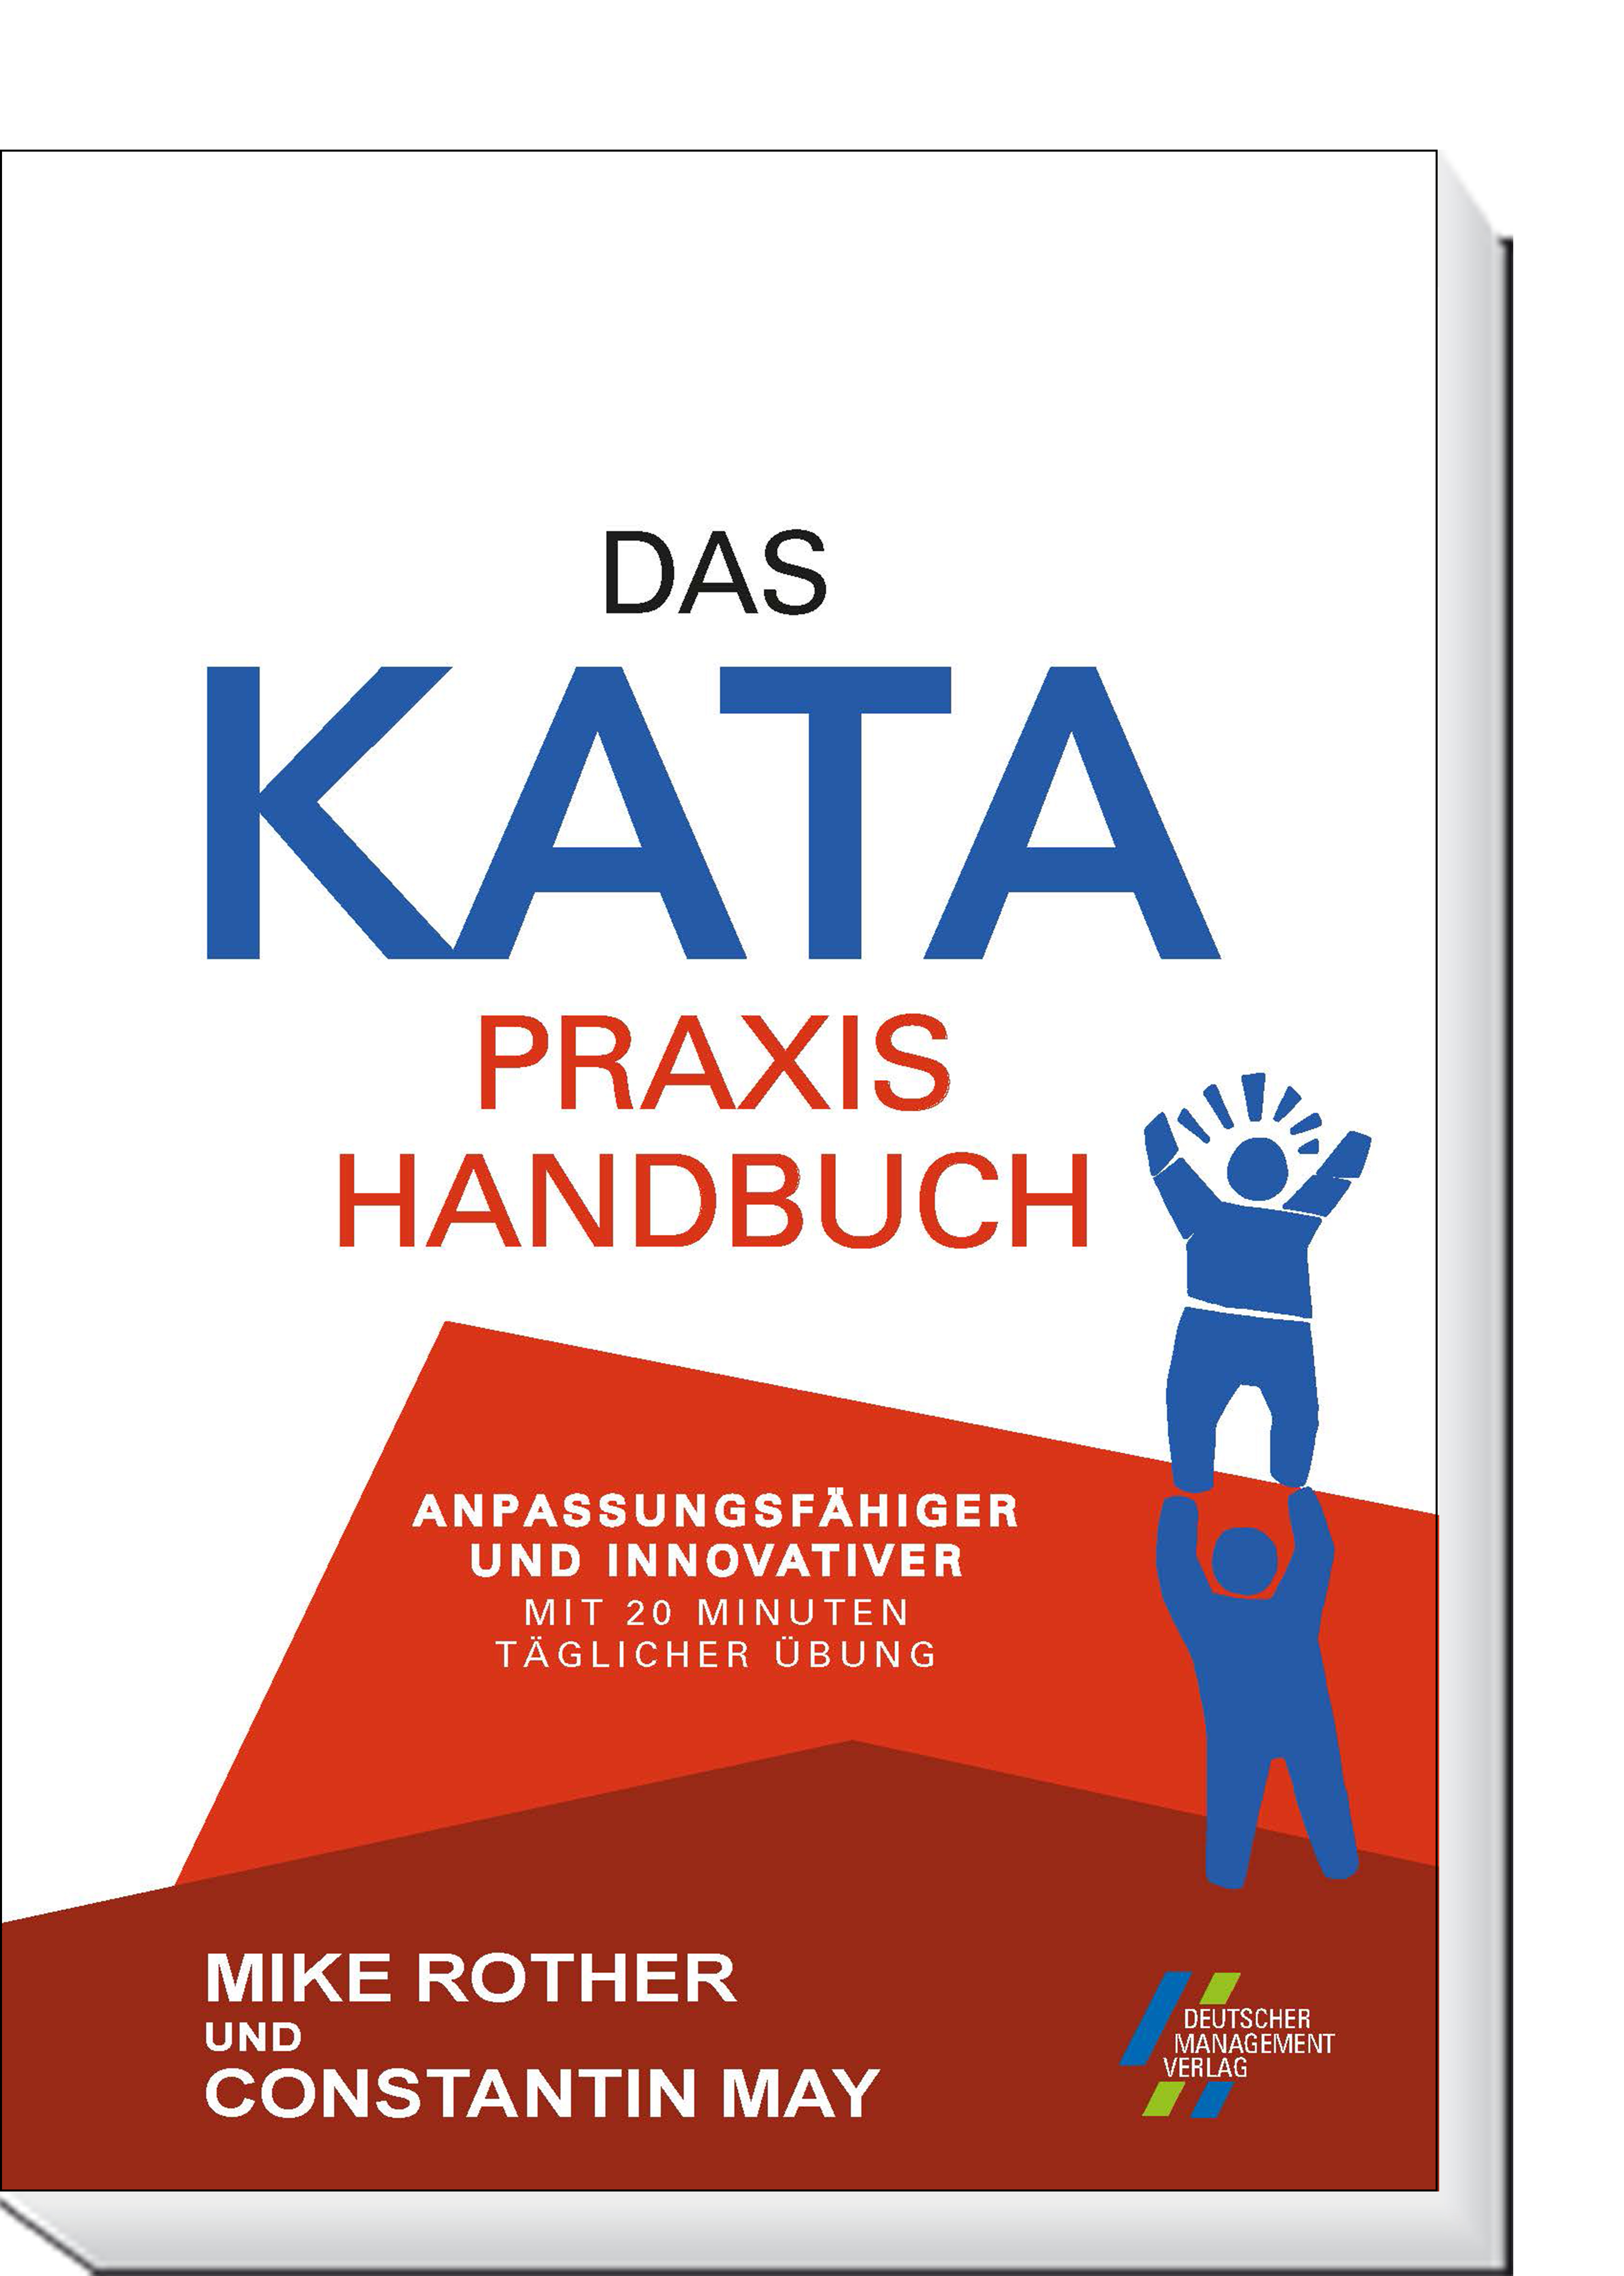 20 und | Minuten Praxishandbuch mit KATA täglicher Das CETPM Übung innovativer Anpassungsfähiger |